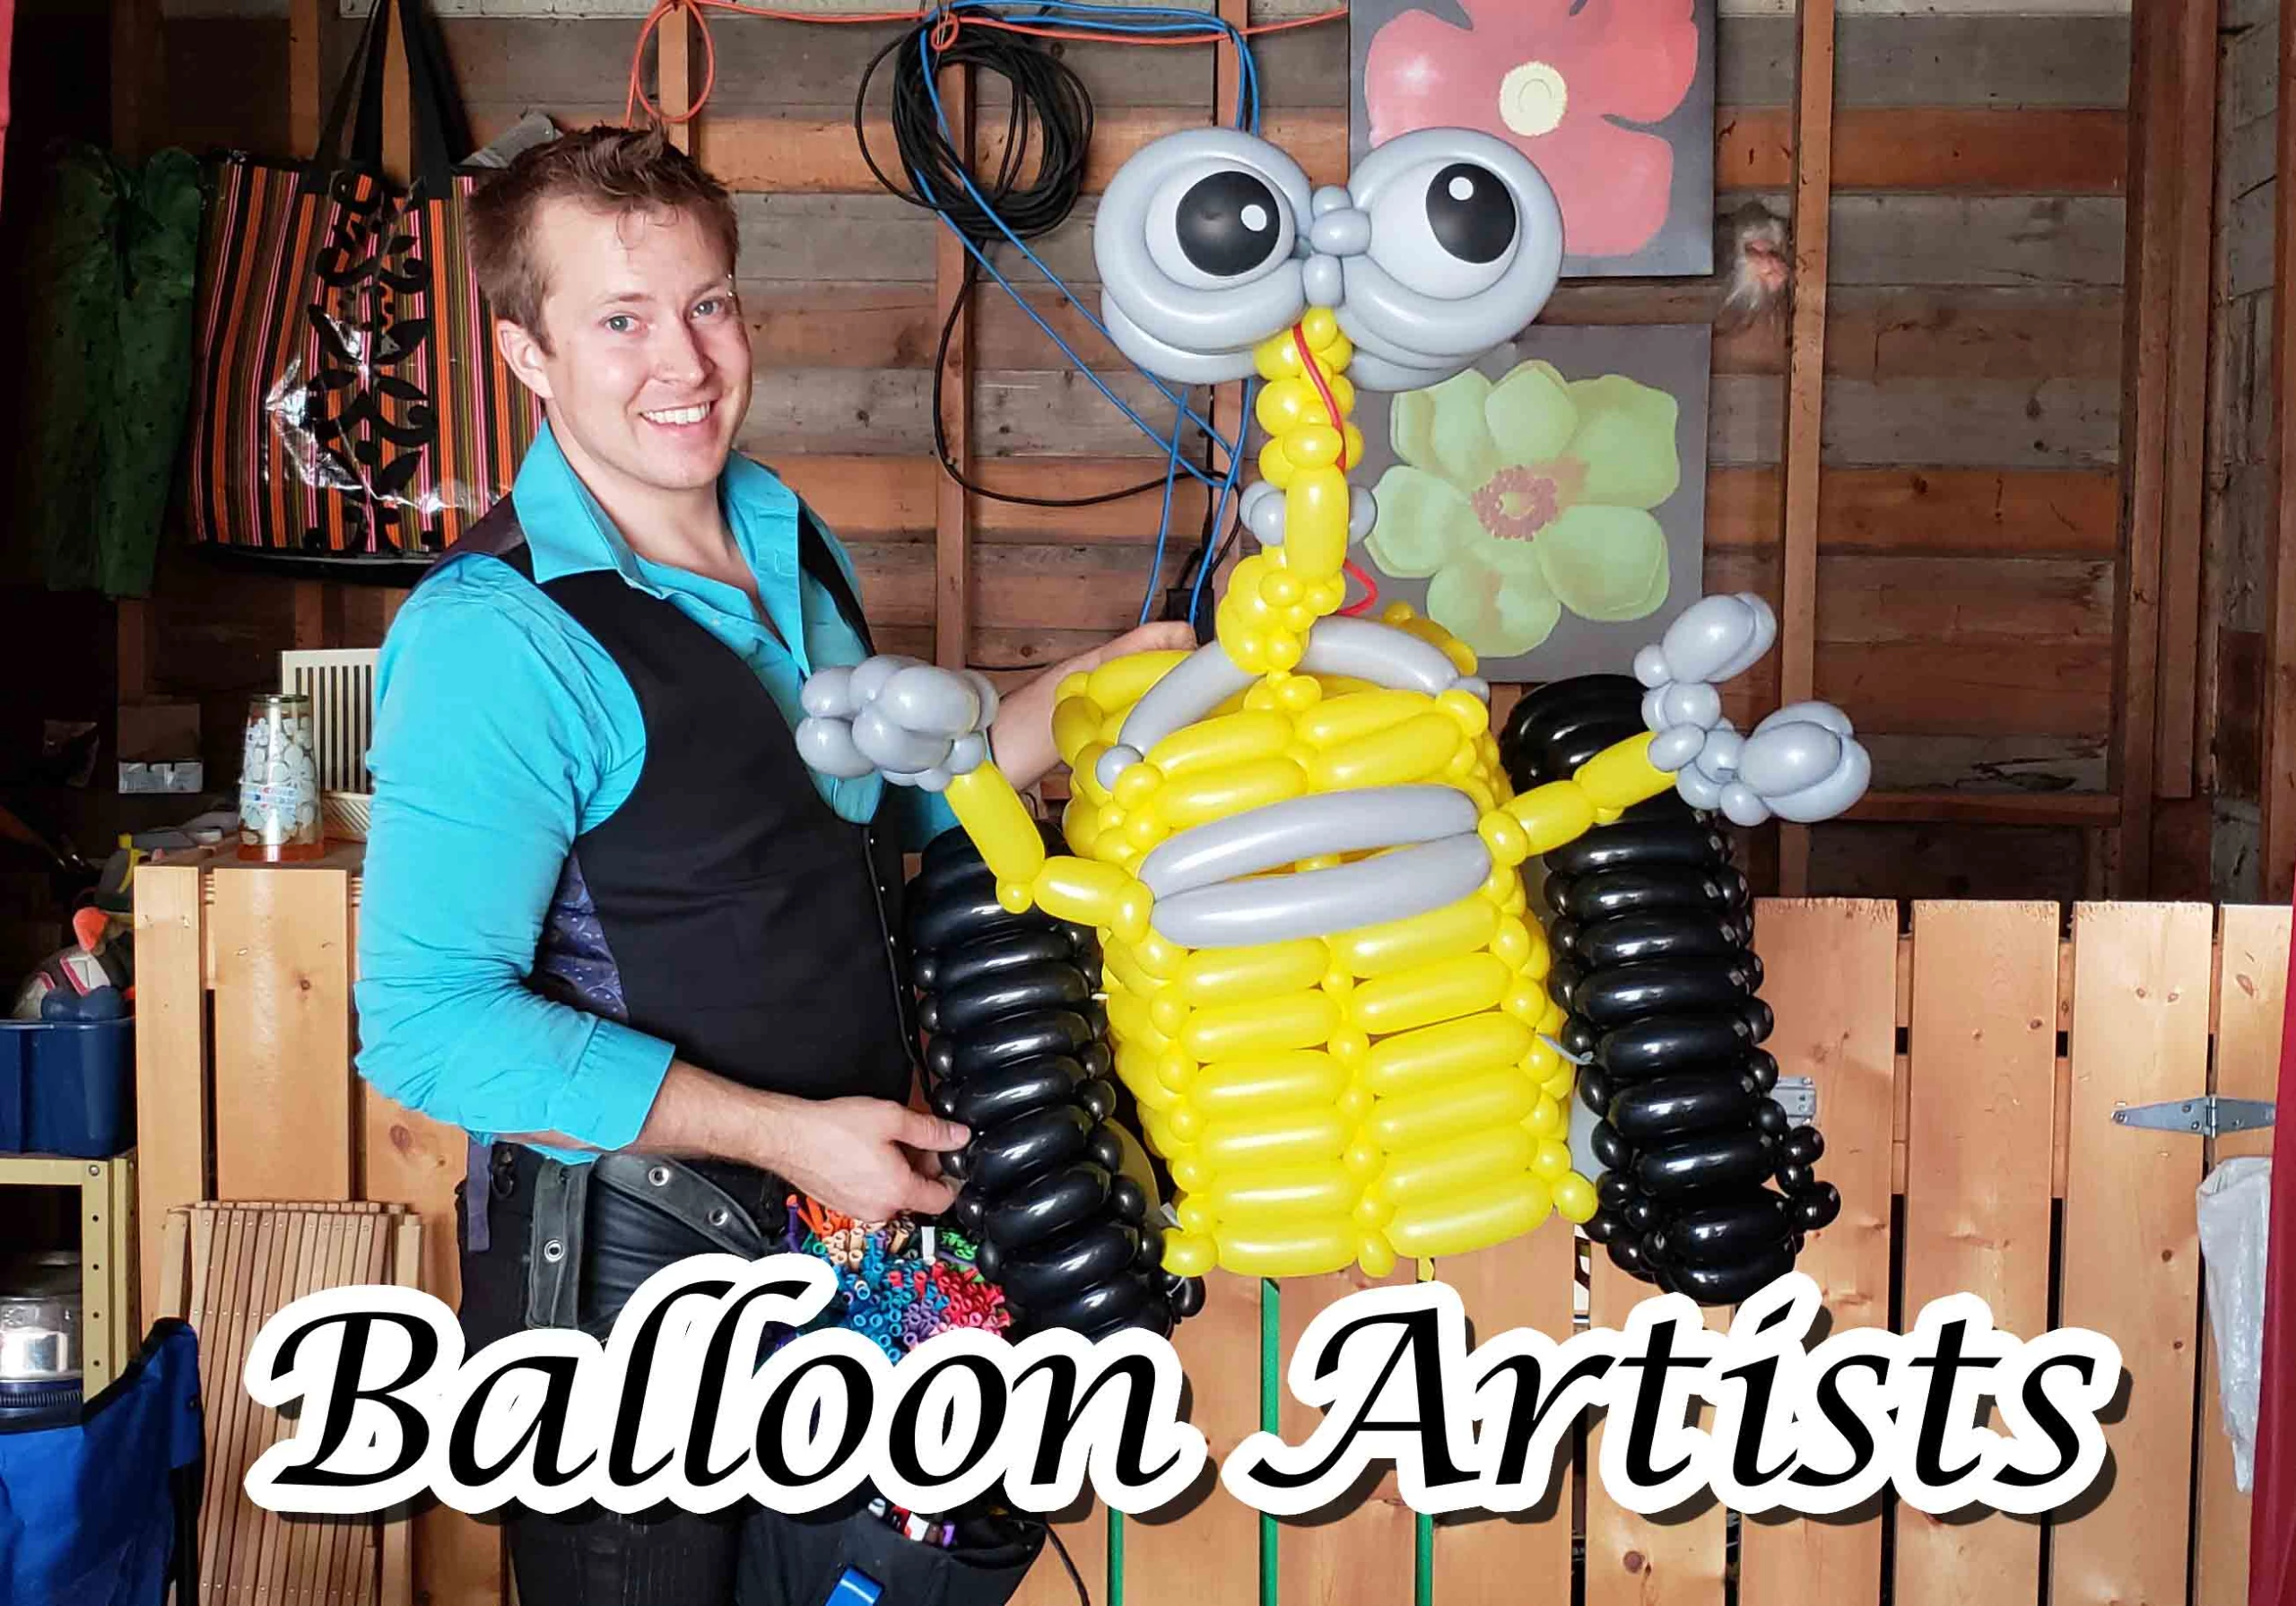 Balloon artists